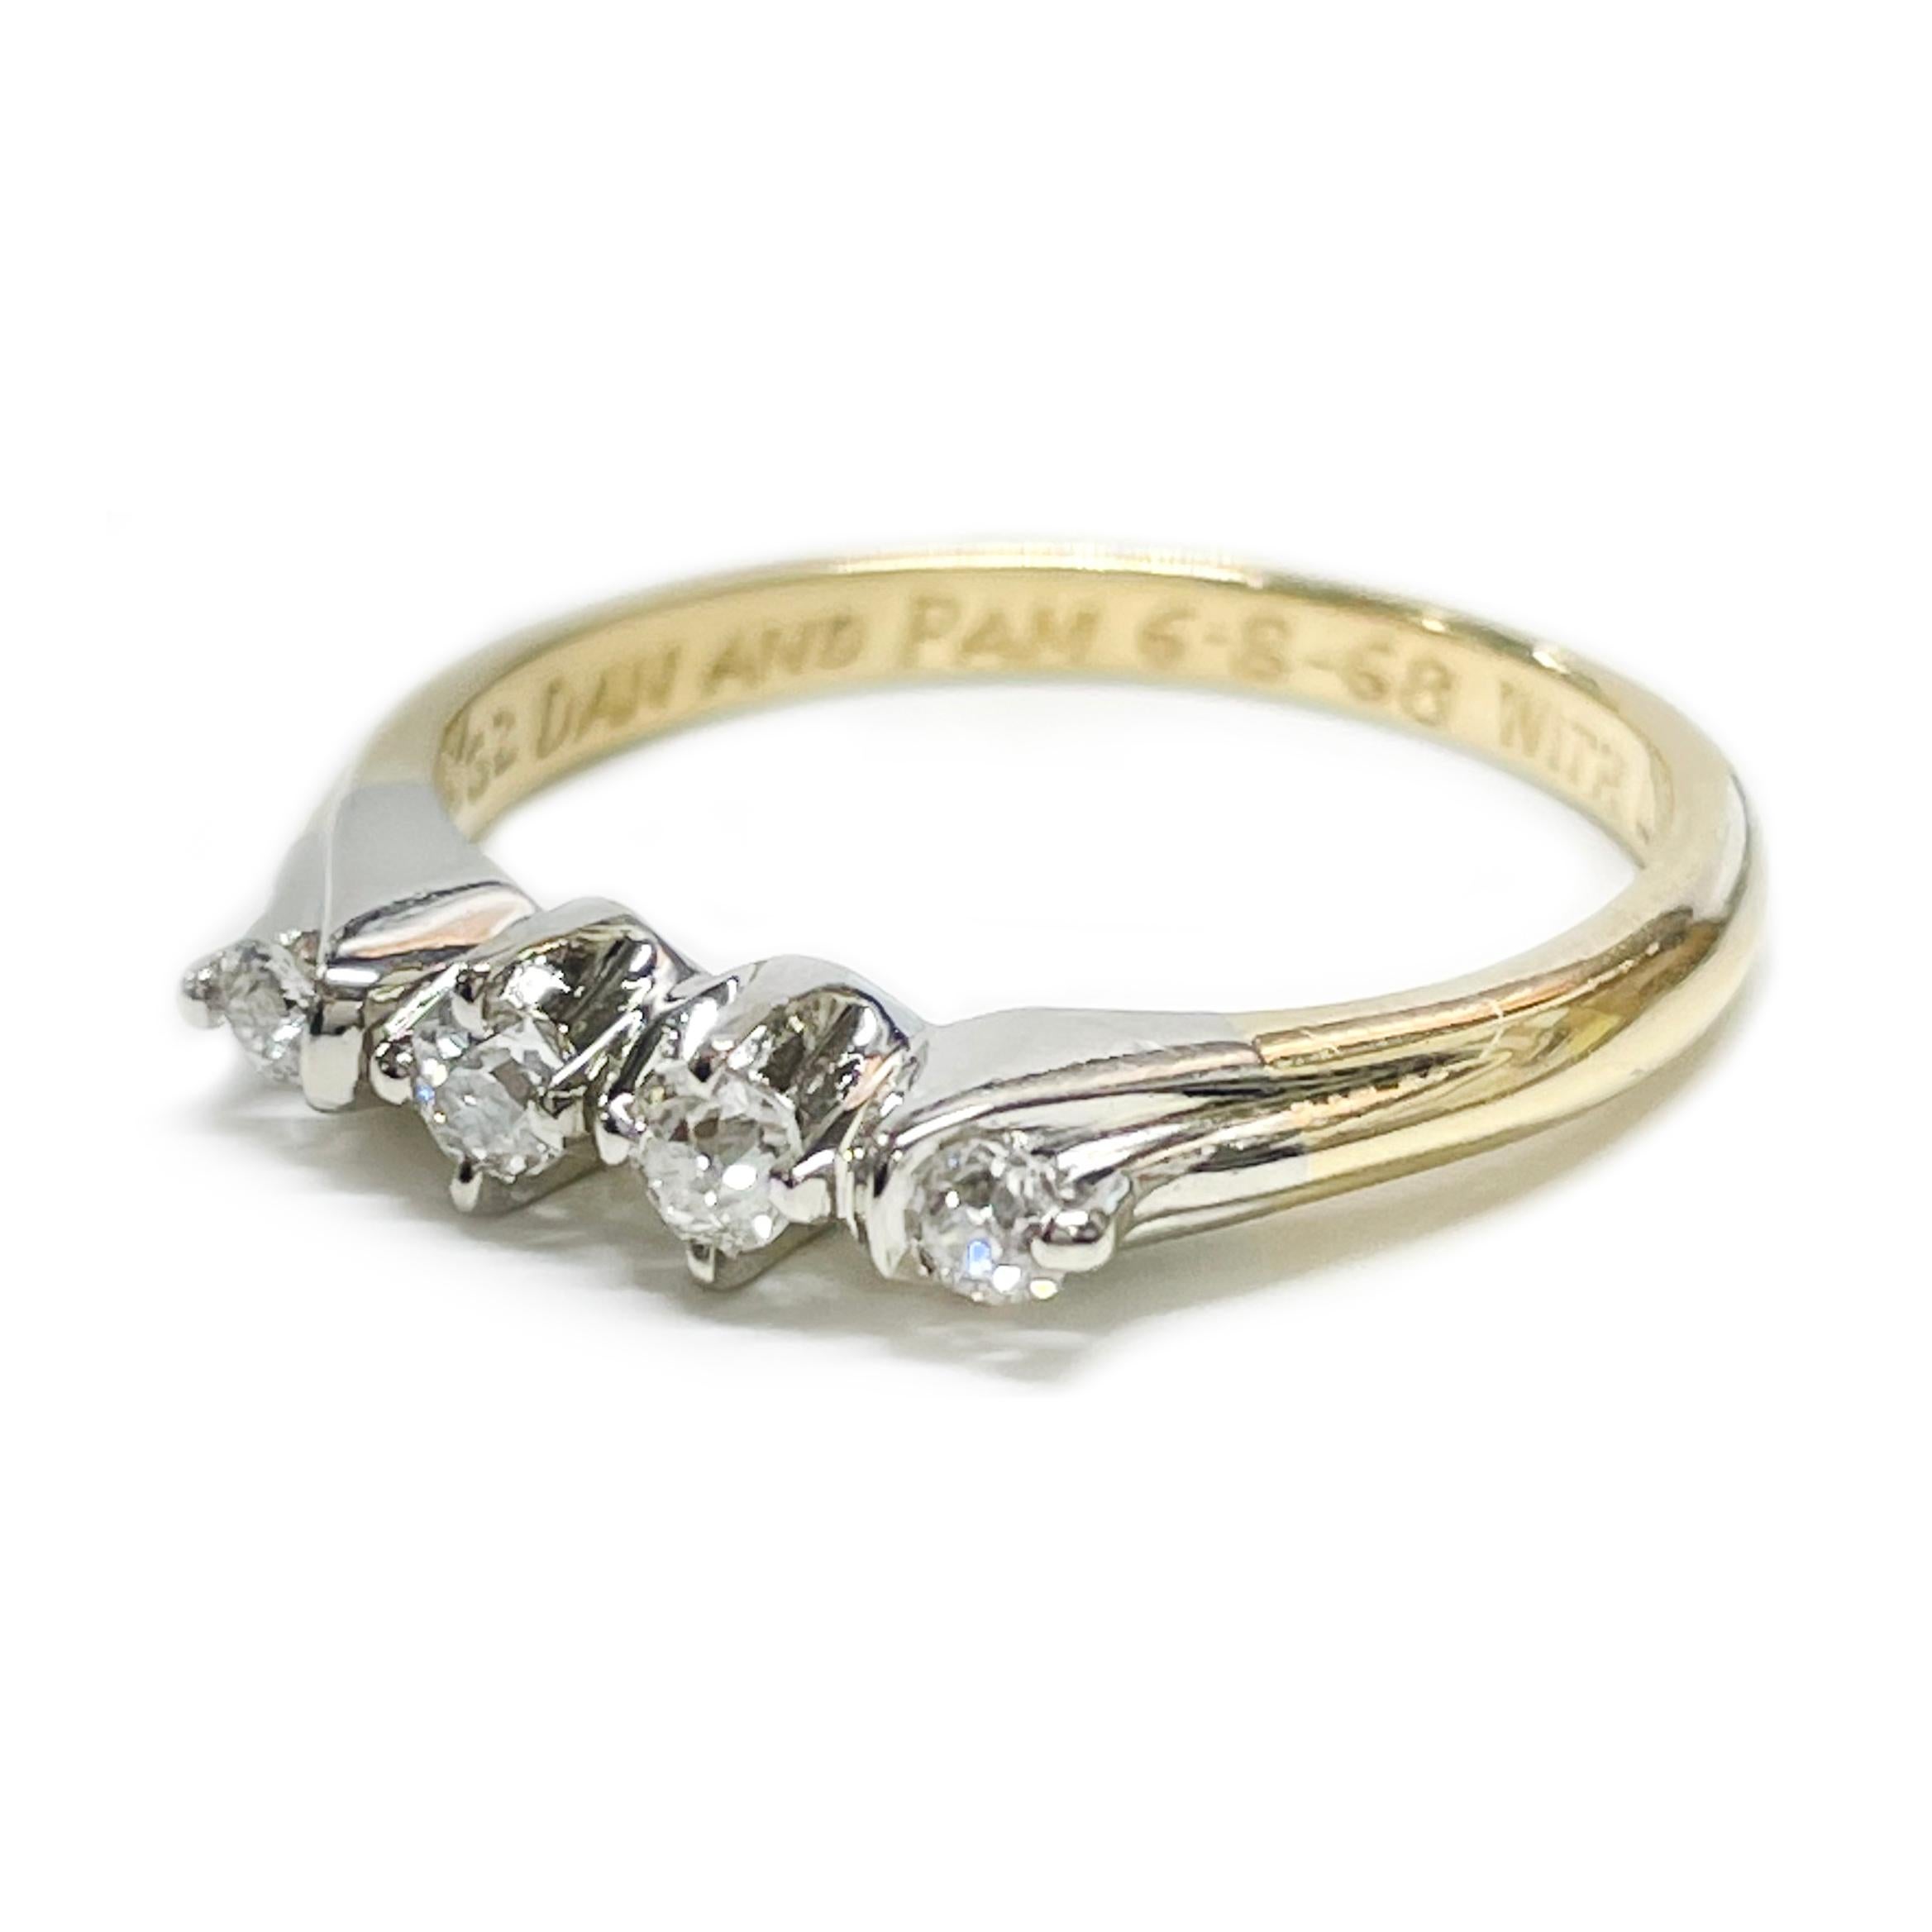 Vintage Thin Two-Tone Four Diamond Ring. Der Ring ist mit vier runden Diamanten im Minenschliff in Weißgold gefasst. Die in Zacken gefassten Diamanten haben die Reinheit SI1 - SI2 (G.I.A.) und die Farbe G-H (G.I.A.). Zwei Diamanten sind 2,4 mm groß